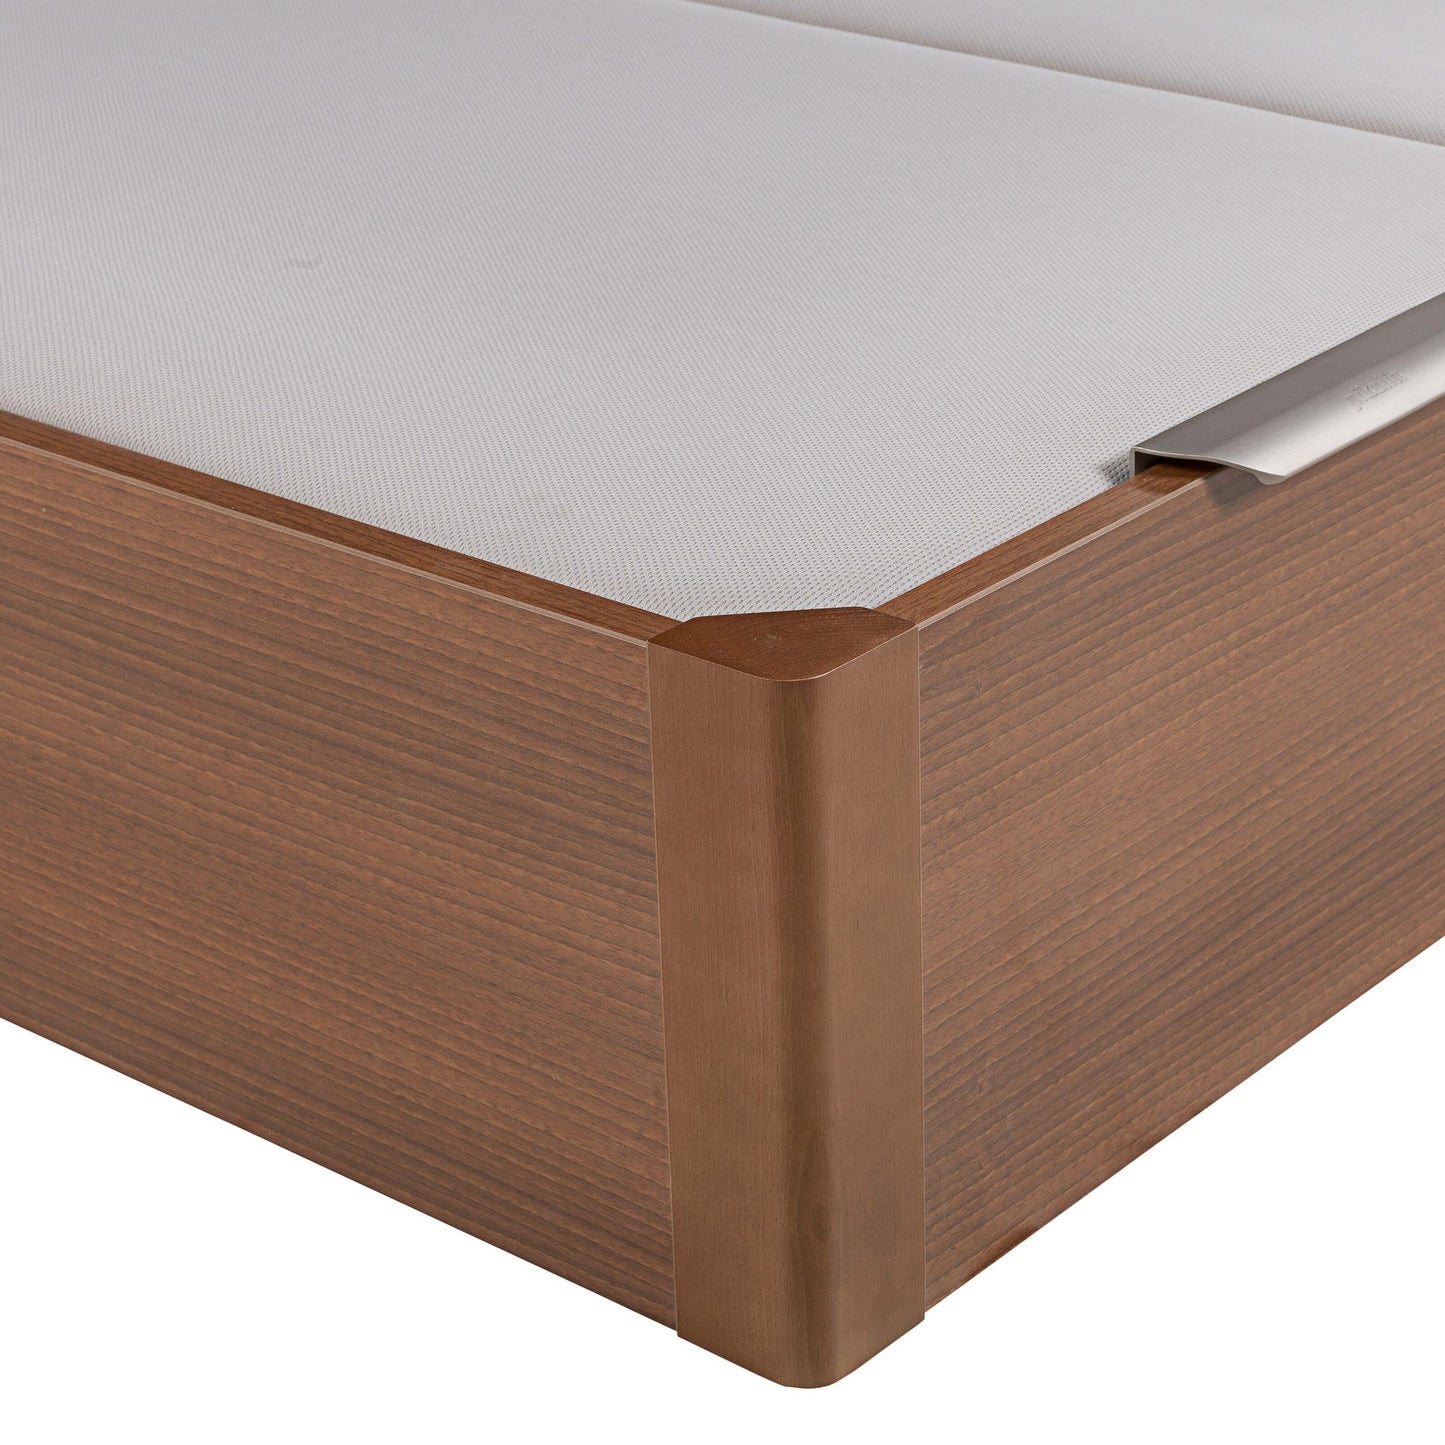 Canapé abatible de madera de tapa doble de color cerezo - DESIGN - 150x190